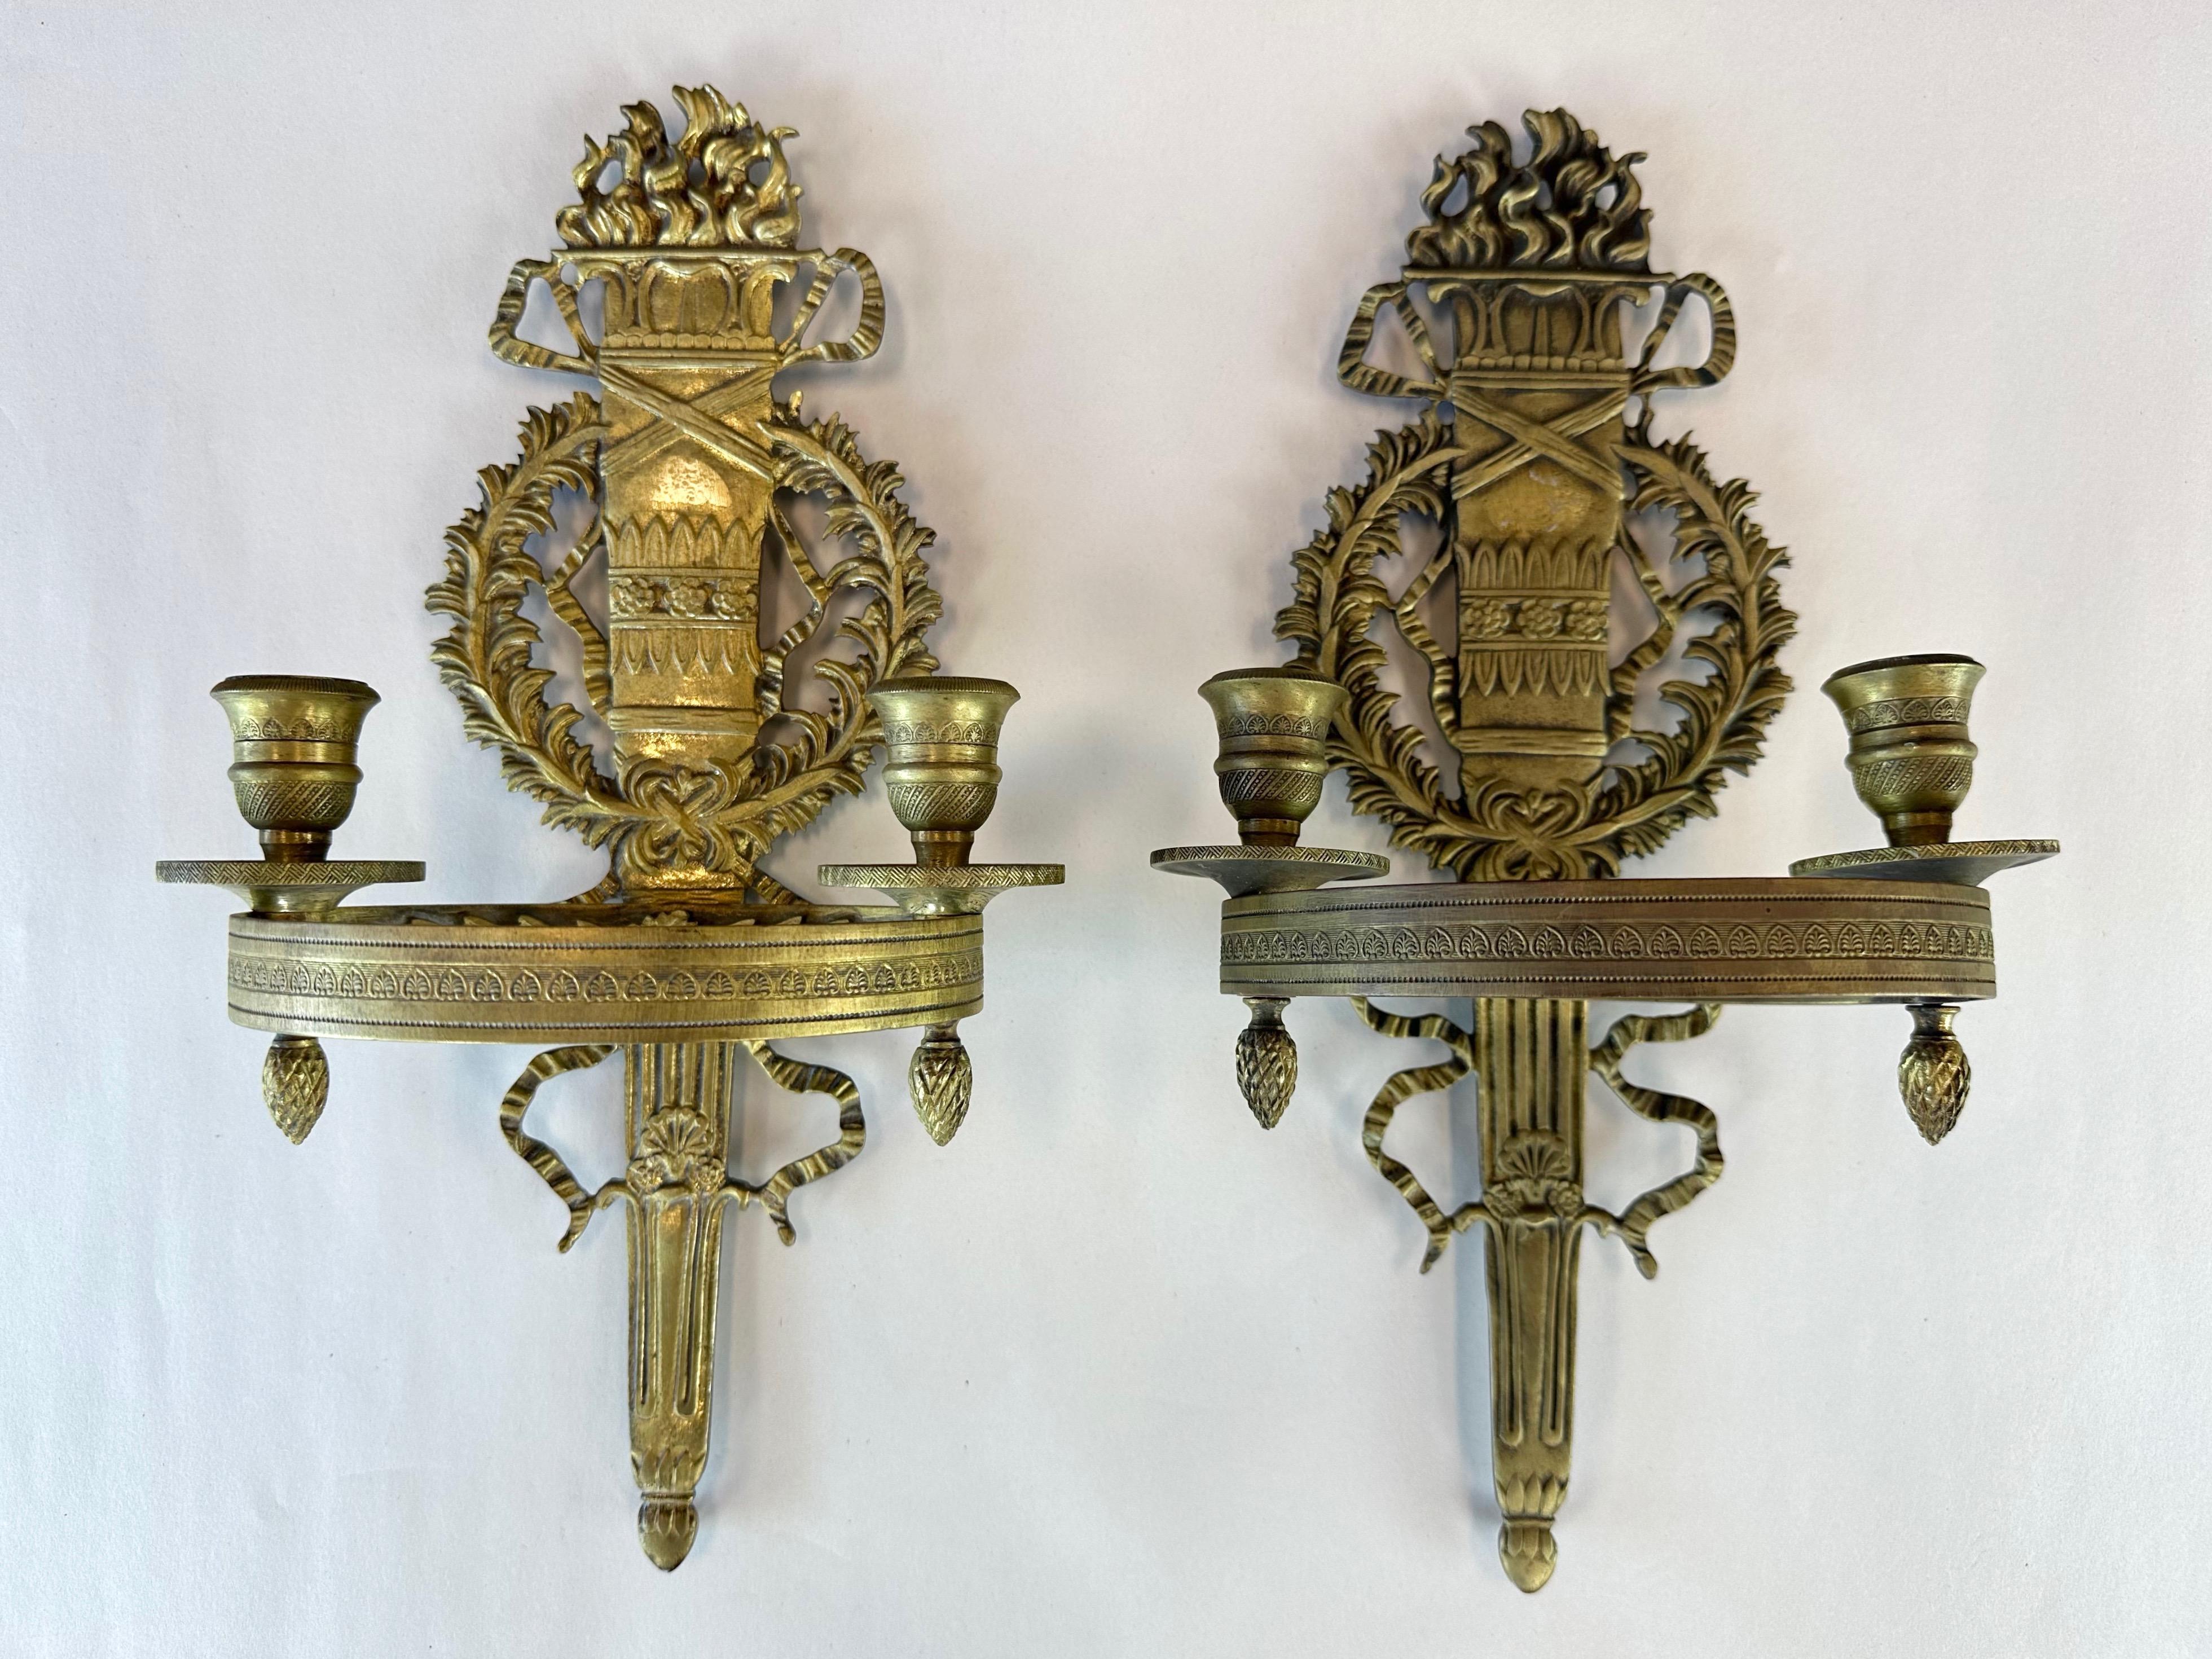 Ein Paar Zweikerzen-Leuchter aus Messing im französischen Empire-Stil der 1950er Jahre.

Durchgehend sehr detailliert. Die gegossene Form zeigt ein flammendes Fackelmotiv, das mit einem Akanthuskranz und gewellten Bändern verziert ist. Das